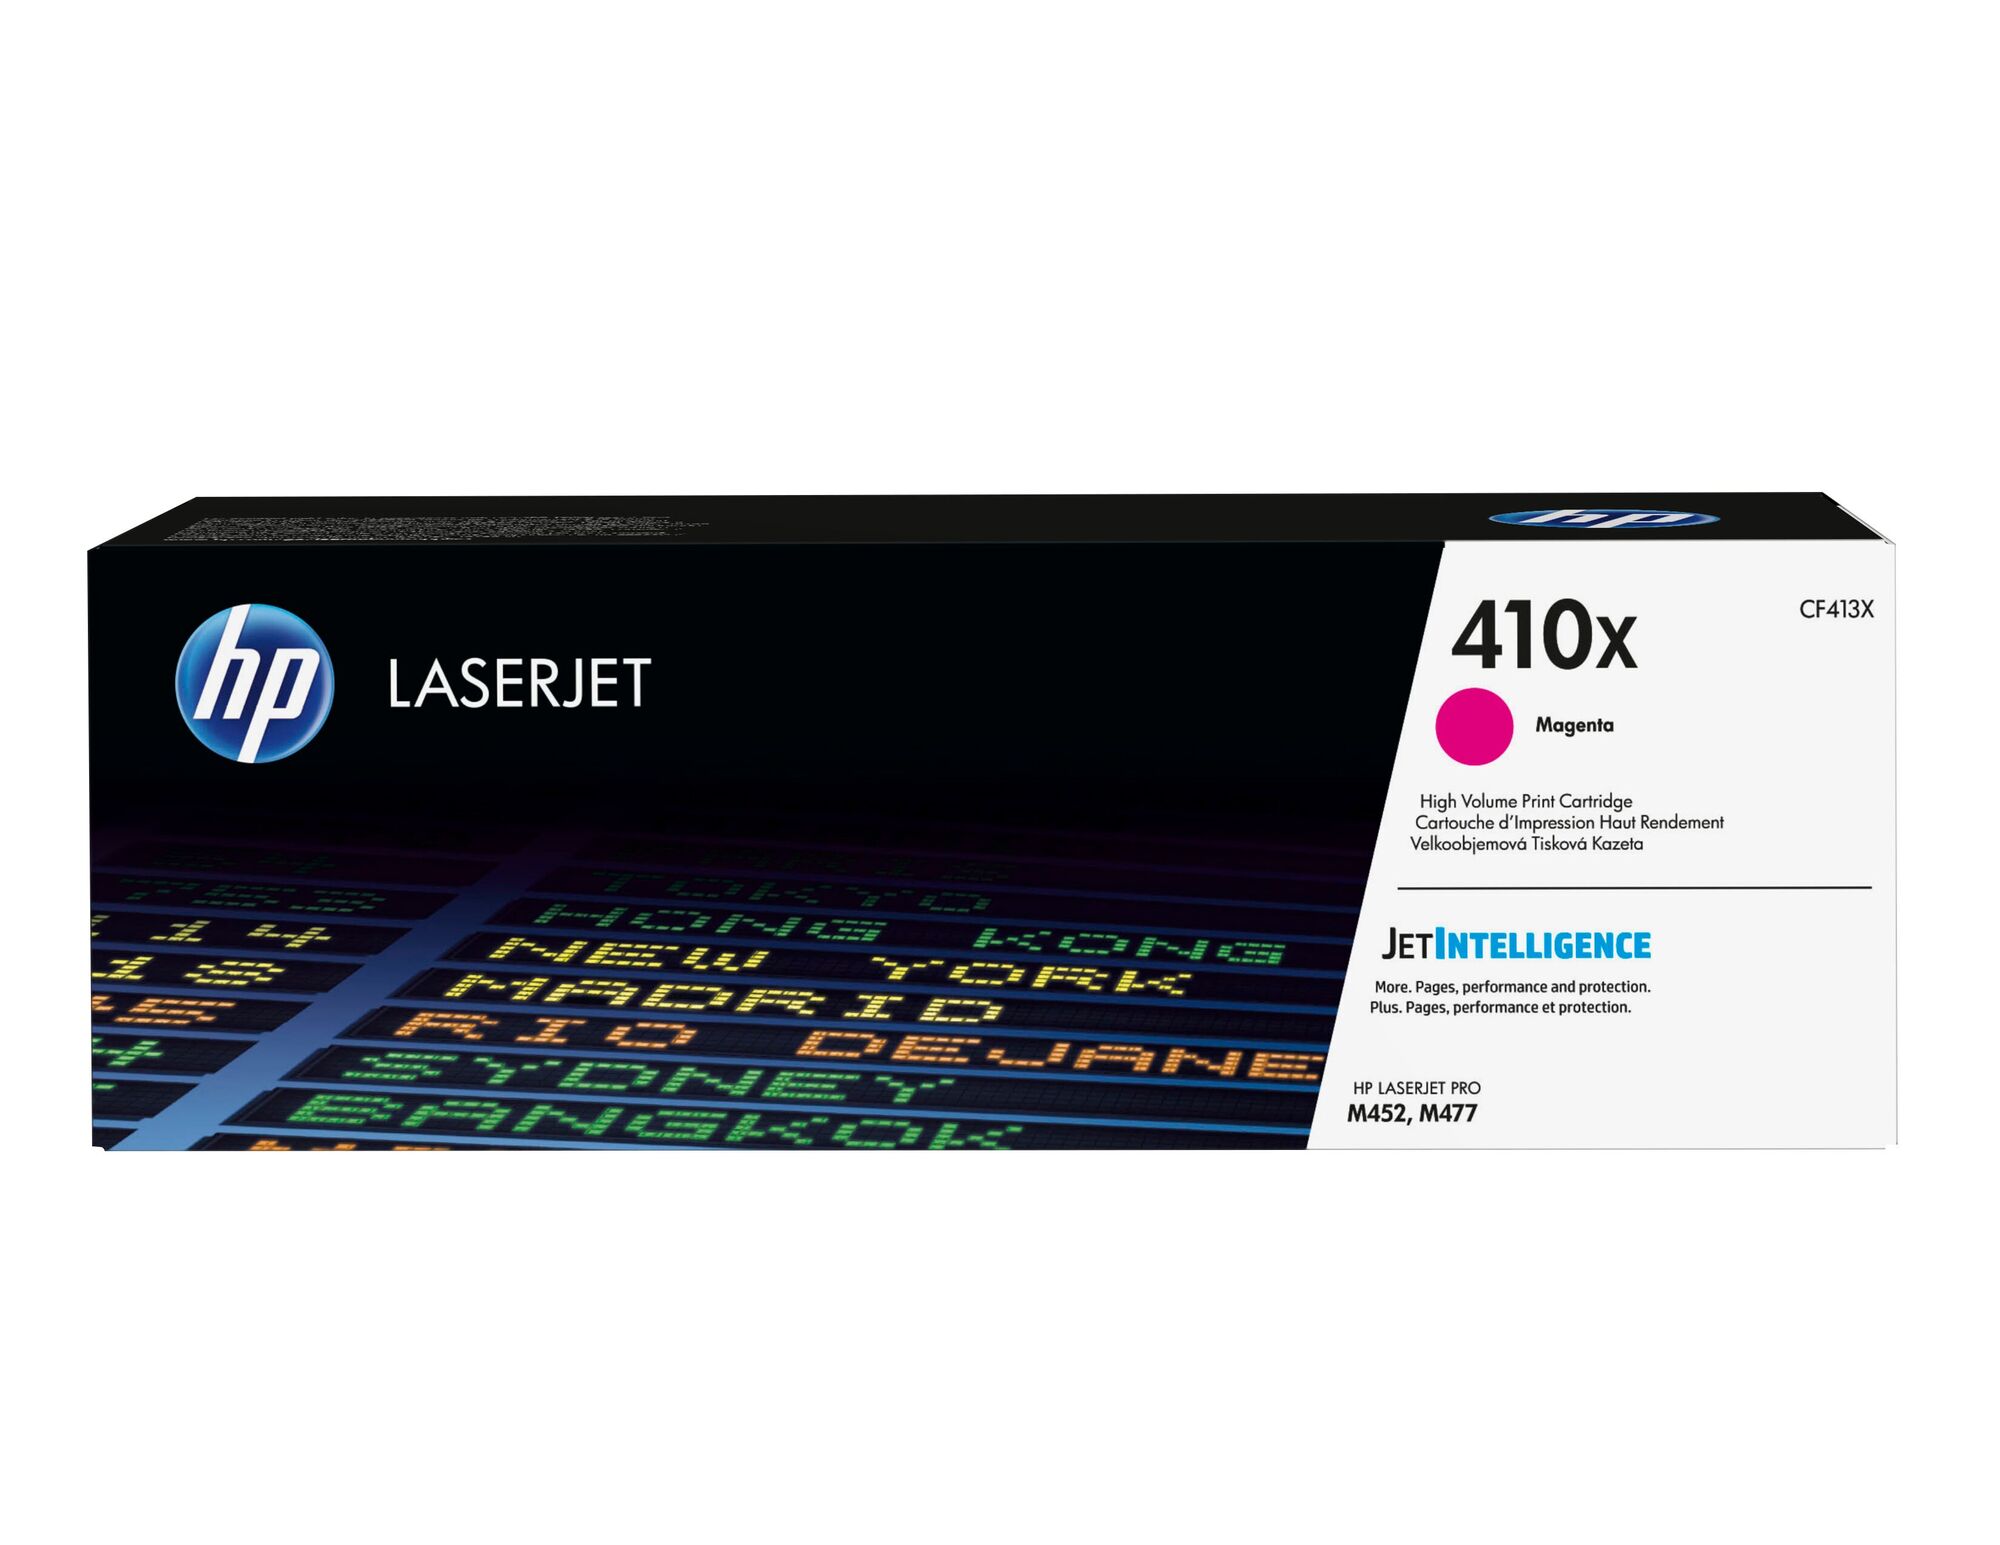 Картридж для печати HP Картридж HP 410X CF413X вид печати лазерный, цвет Пурпурный, емкость